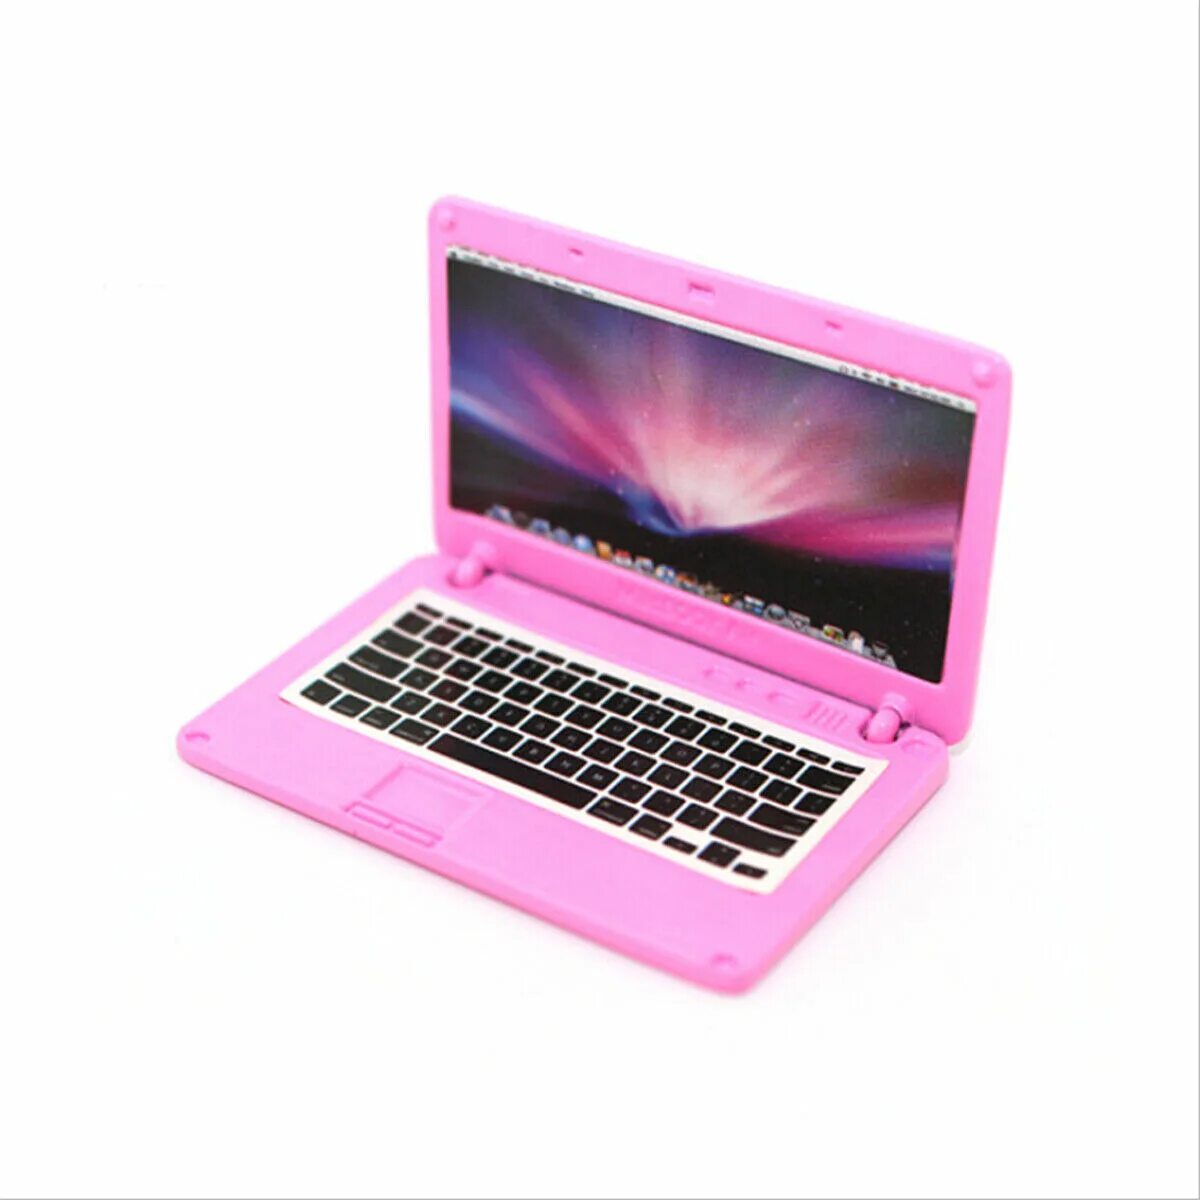 Модели маленьких ноутбуков. Эпл мини ноутбук. Ноутбук розовый маленький. Ноутбук маленький недорогой. Мини Ноутбуки недорогие.